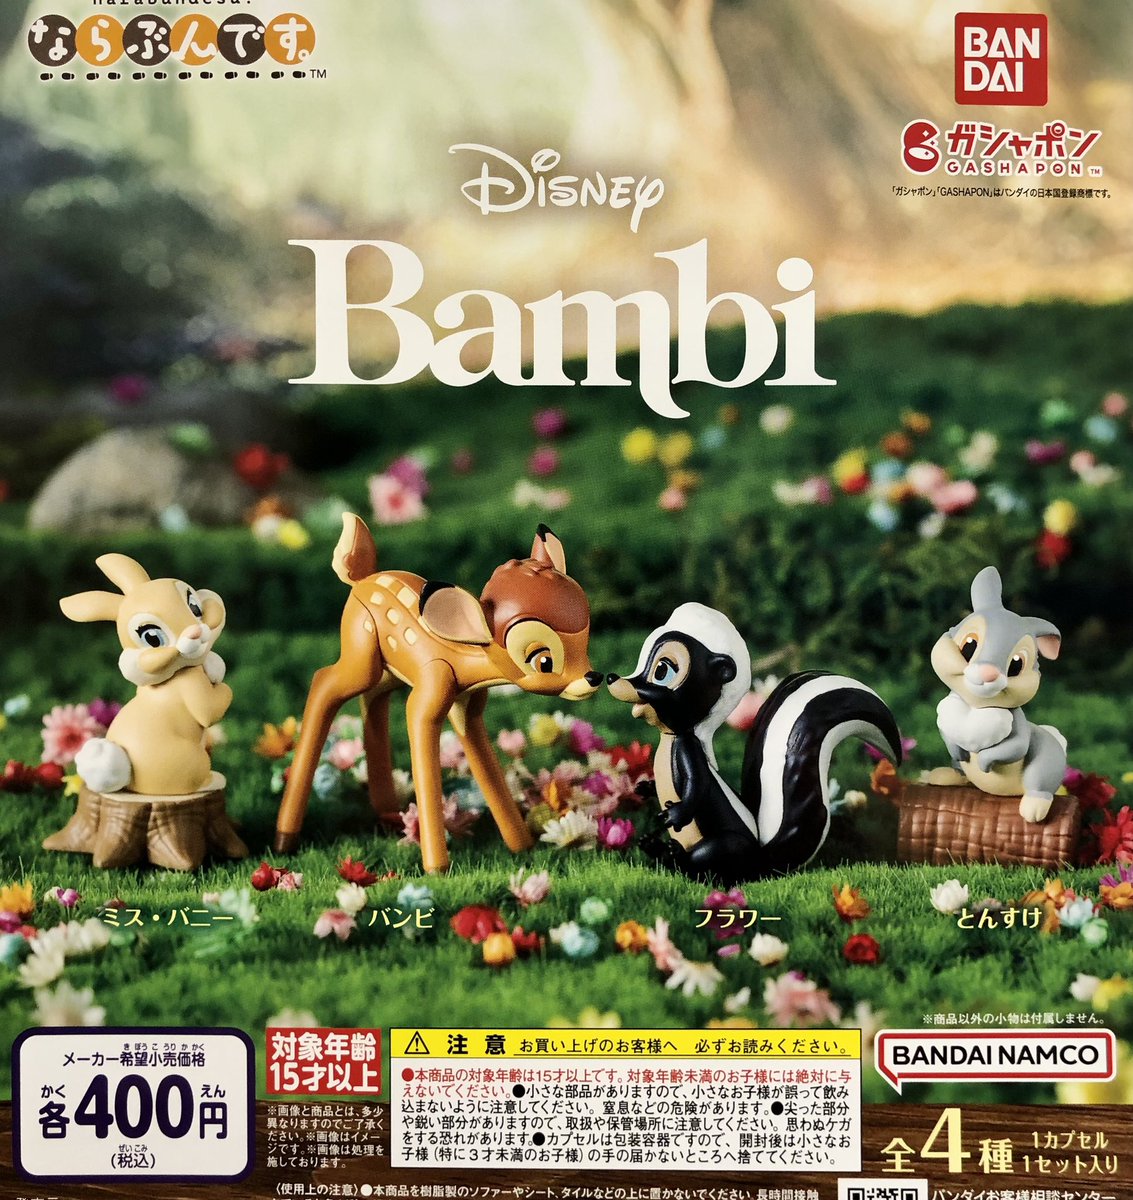 ◆入荷情報✨

・まちぼうけ　サンリオキャラクターズ3

・Disney Bambi ならぶんです。

入荷しました☺️

#ガシャポンのデパート 
#ガシャ活
#ゆめタウン高松